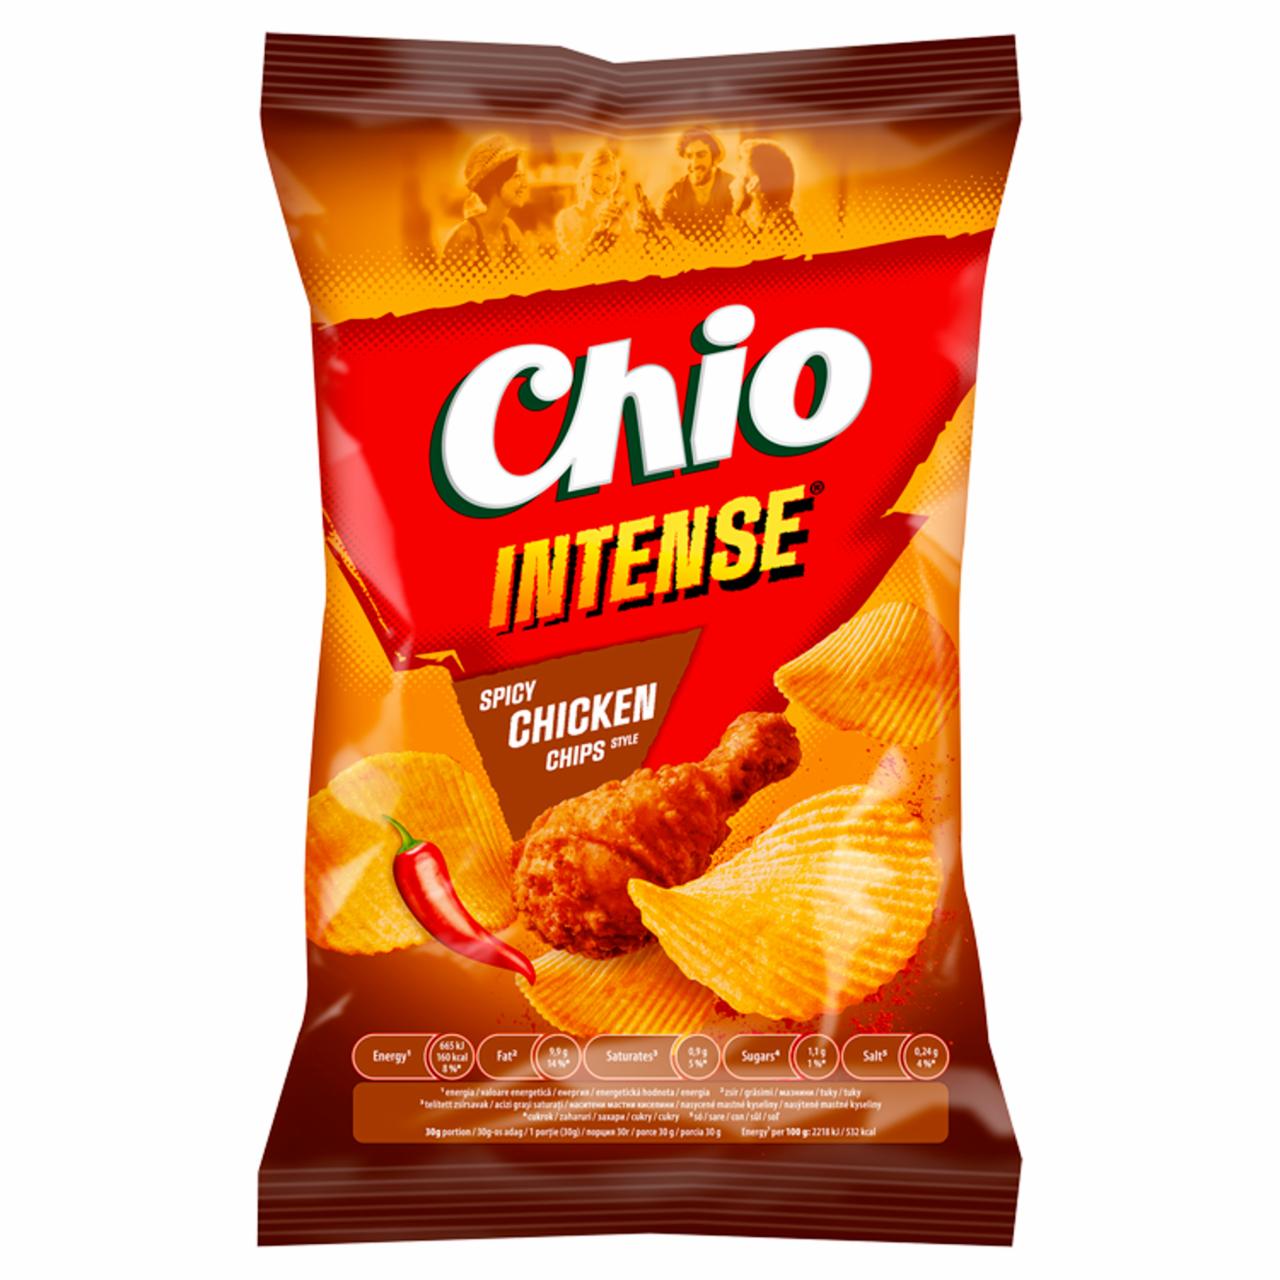 Képek - Chio Intense chili és csirkehús ízű burgonyachips 55 g